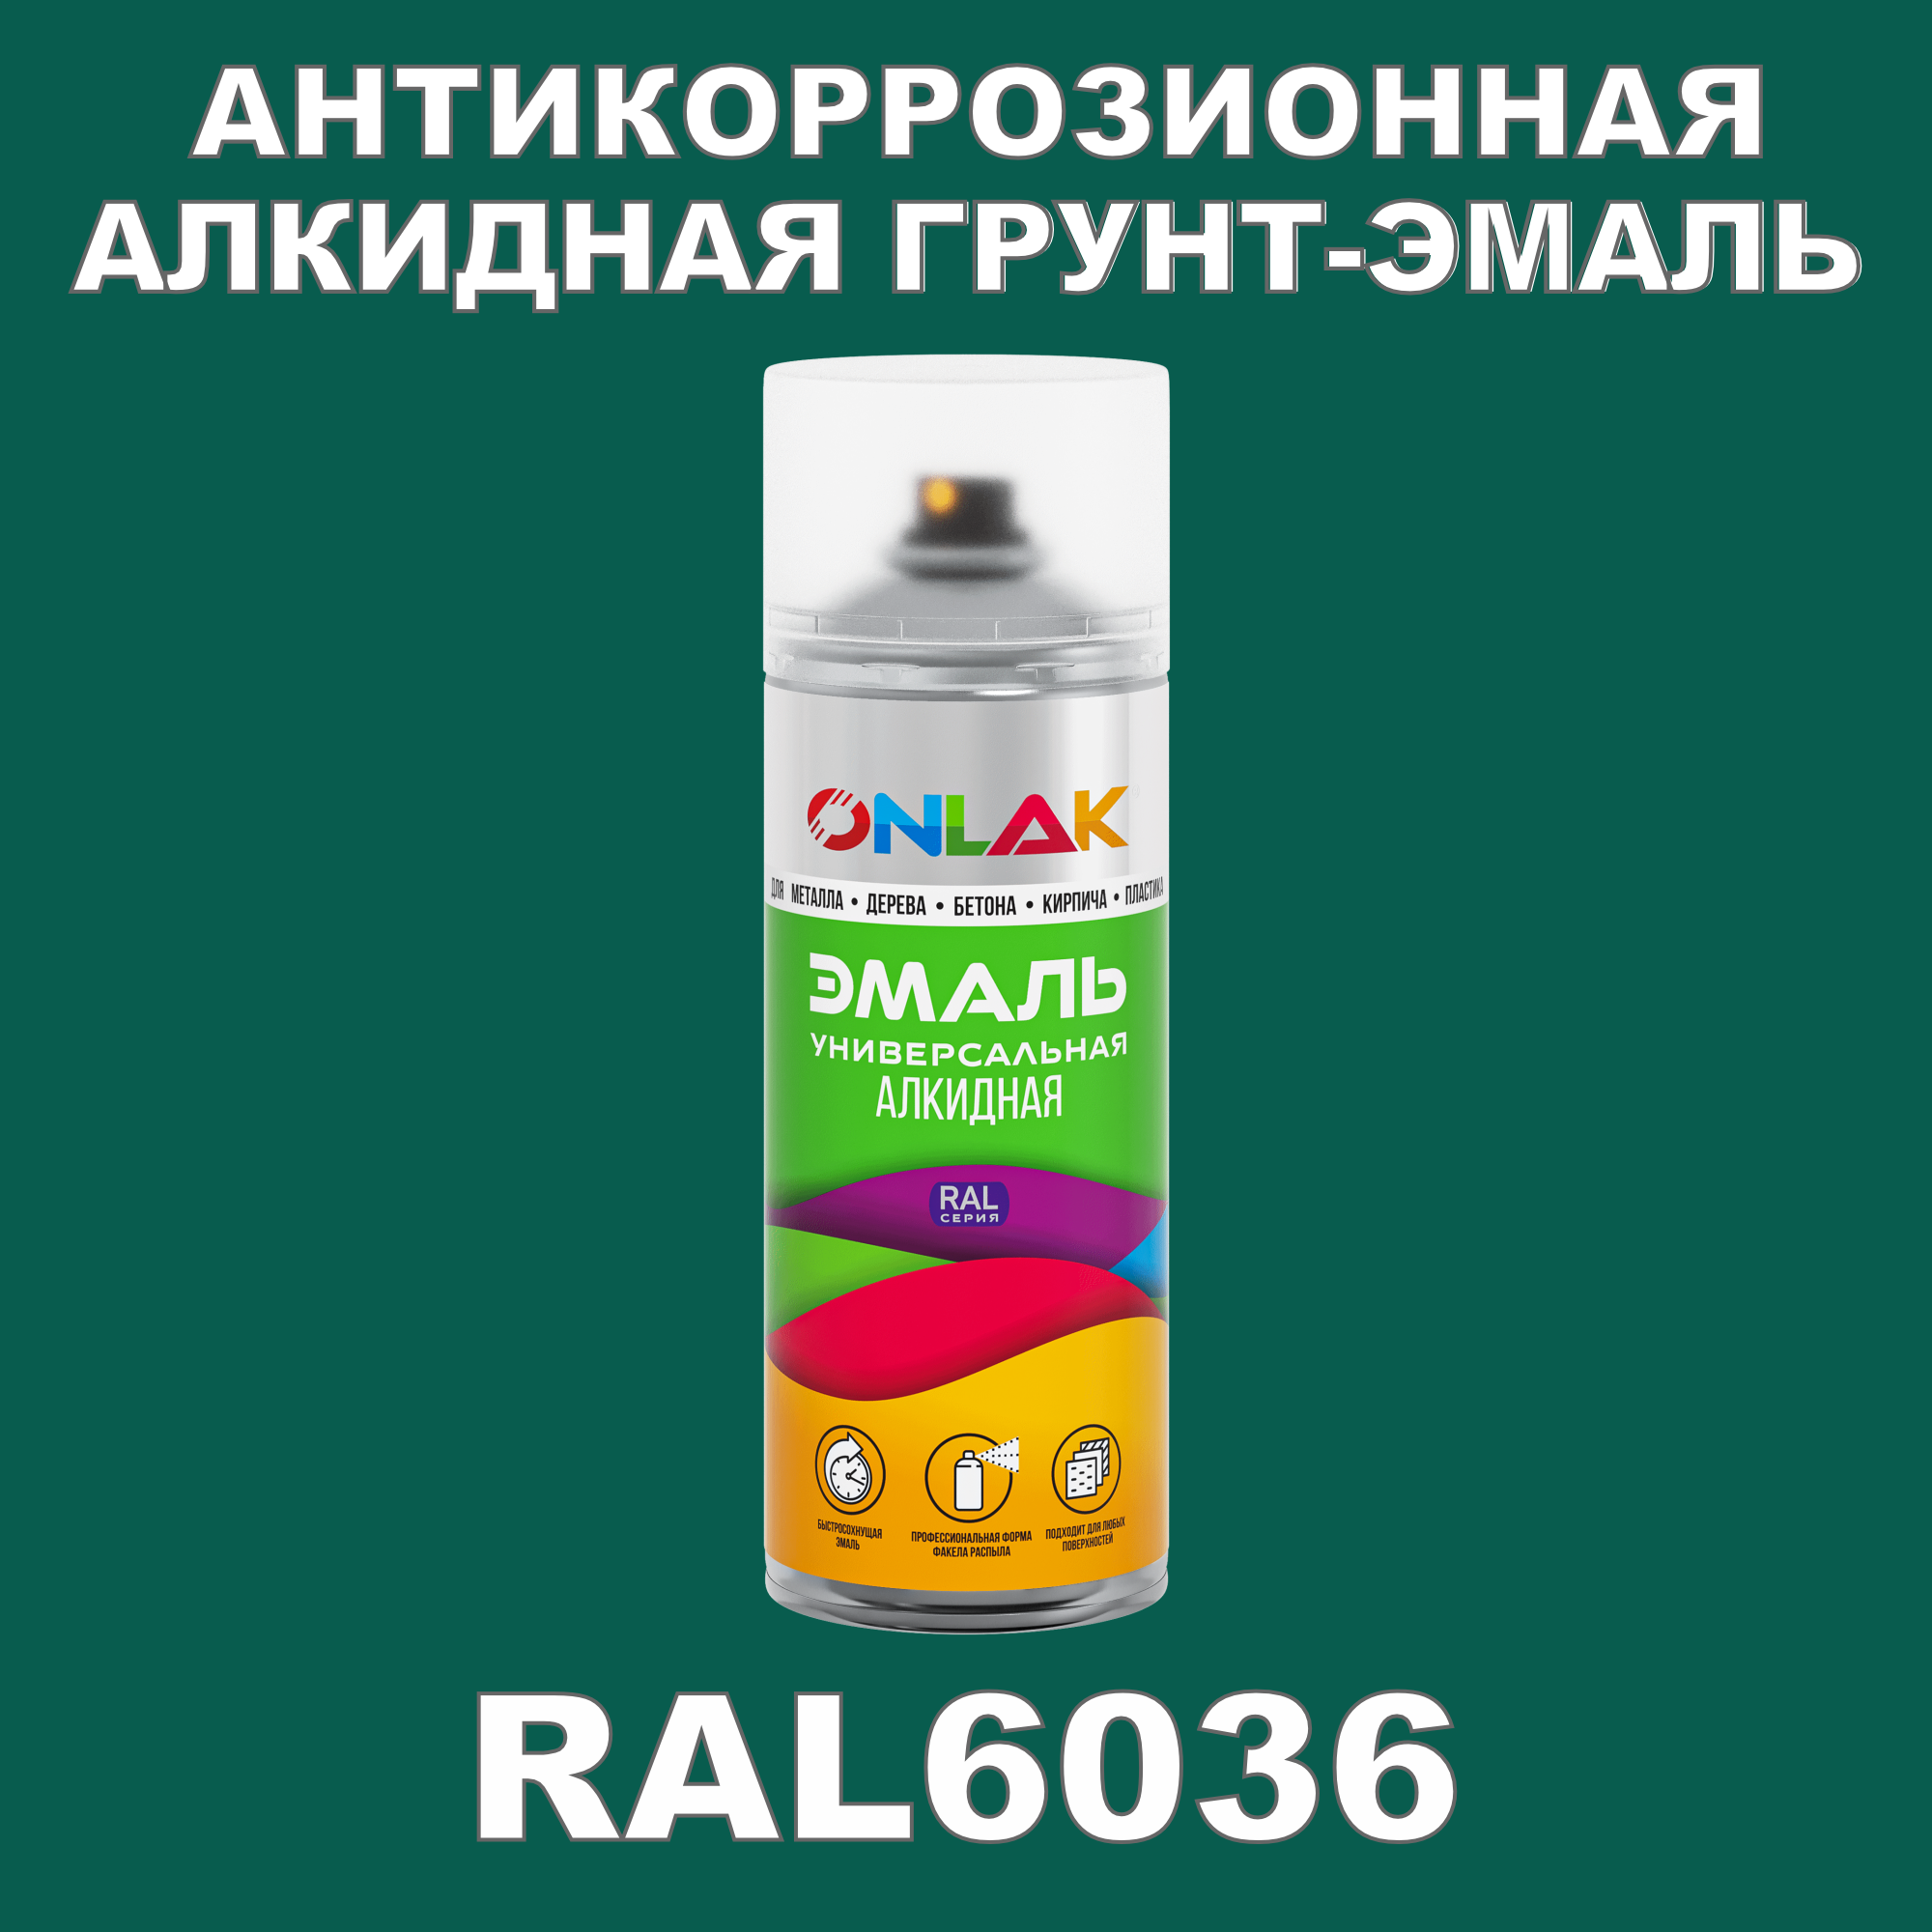 Антикоррозионная грунт-эмаль ONLAK RAL6036 полуматовая для металла и защиты от ржавчины